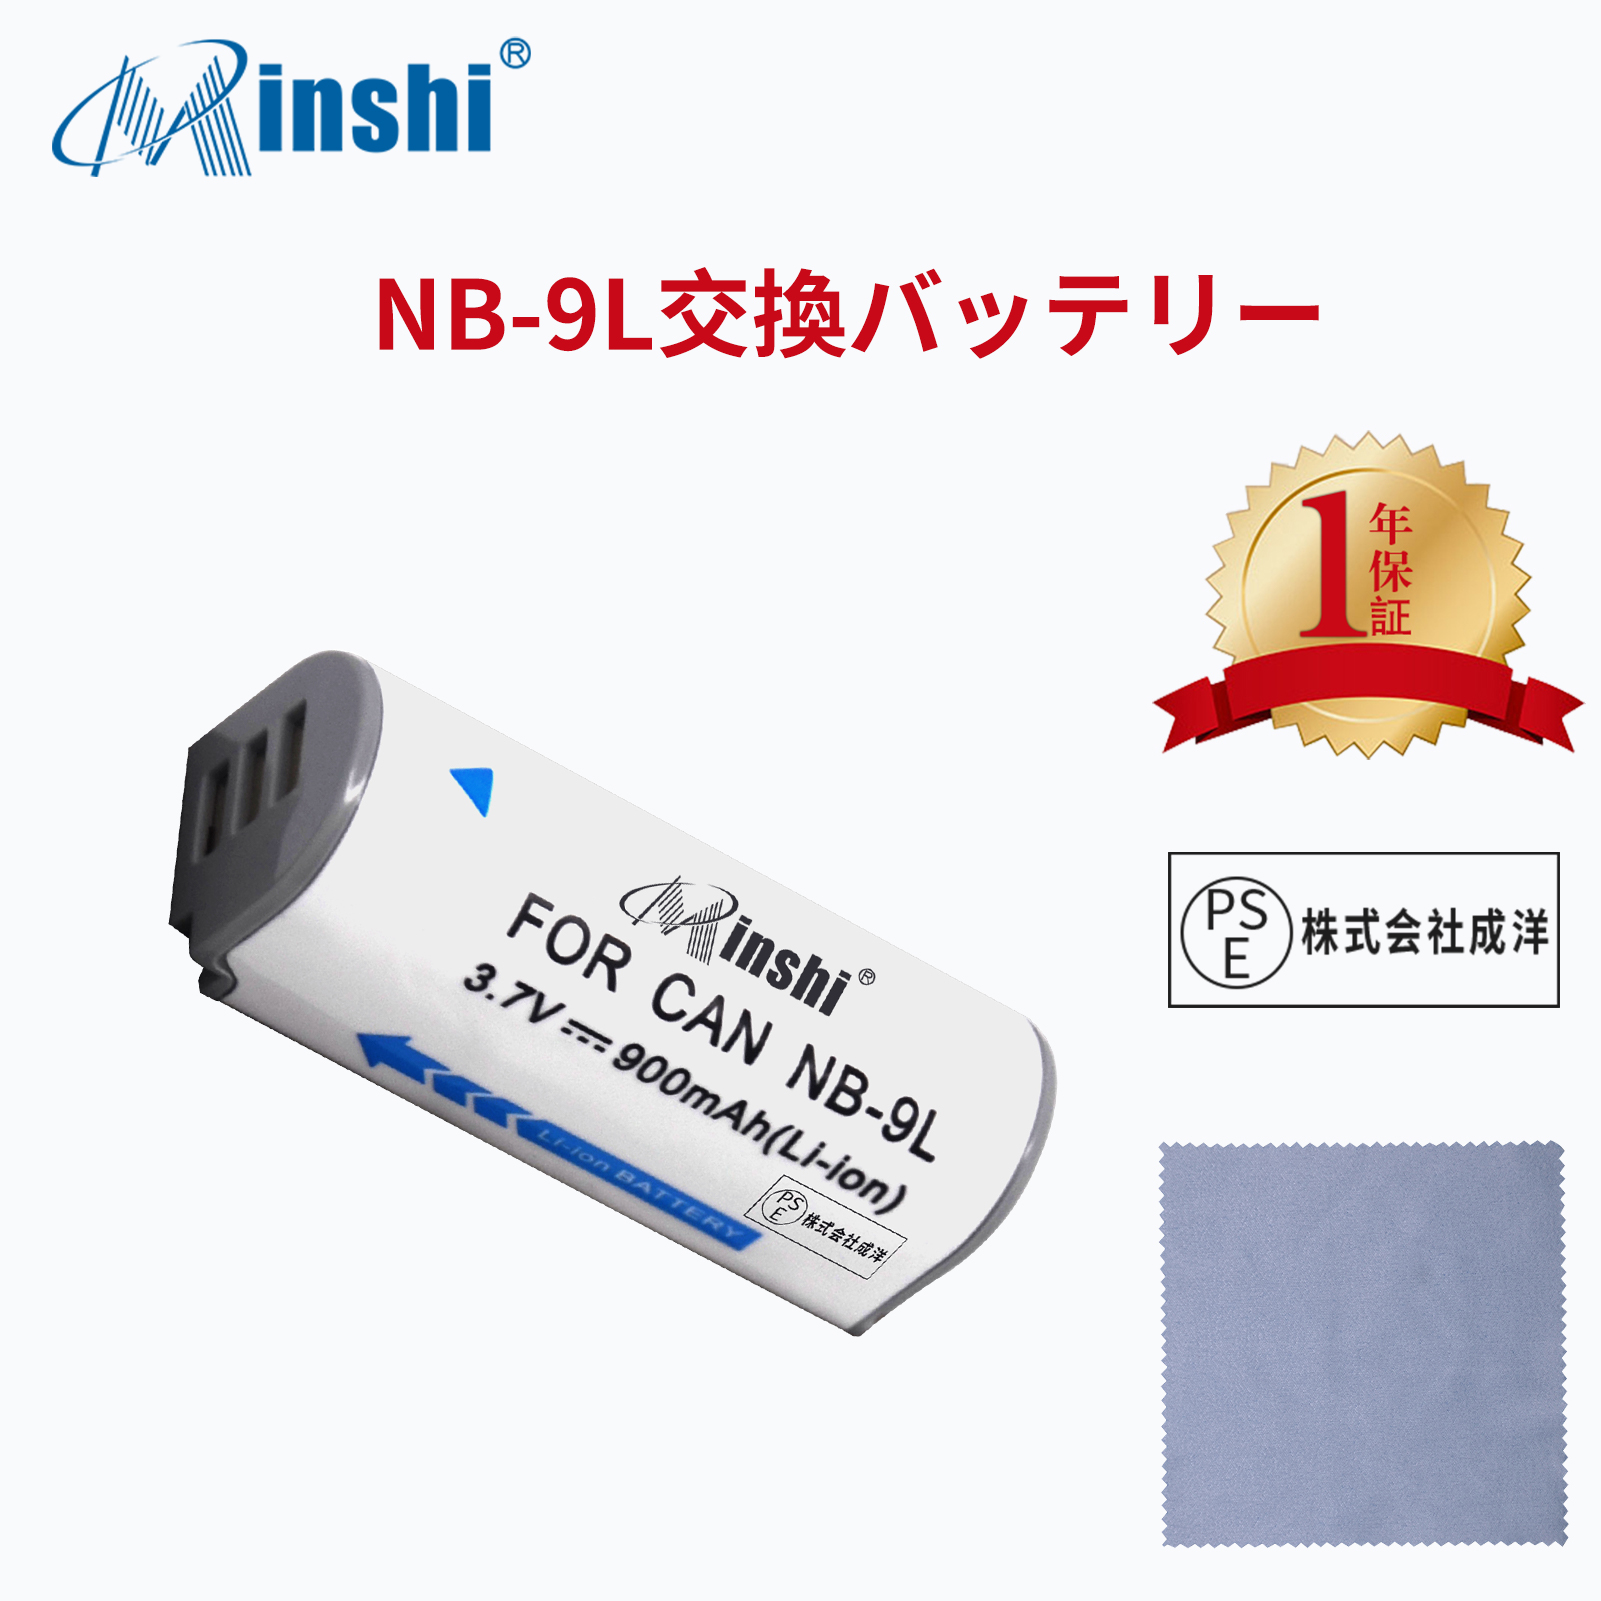 【クロス付き】minshi Panasonic PowerShot N NB-9L 【900mAh 3.7V】PSE認定済 高品質交換用バッテリー